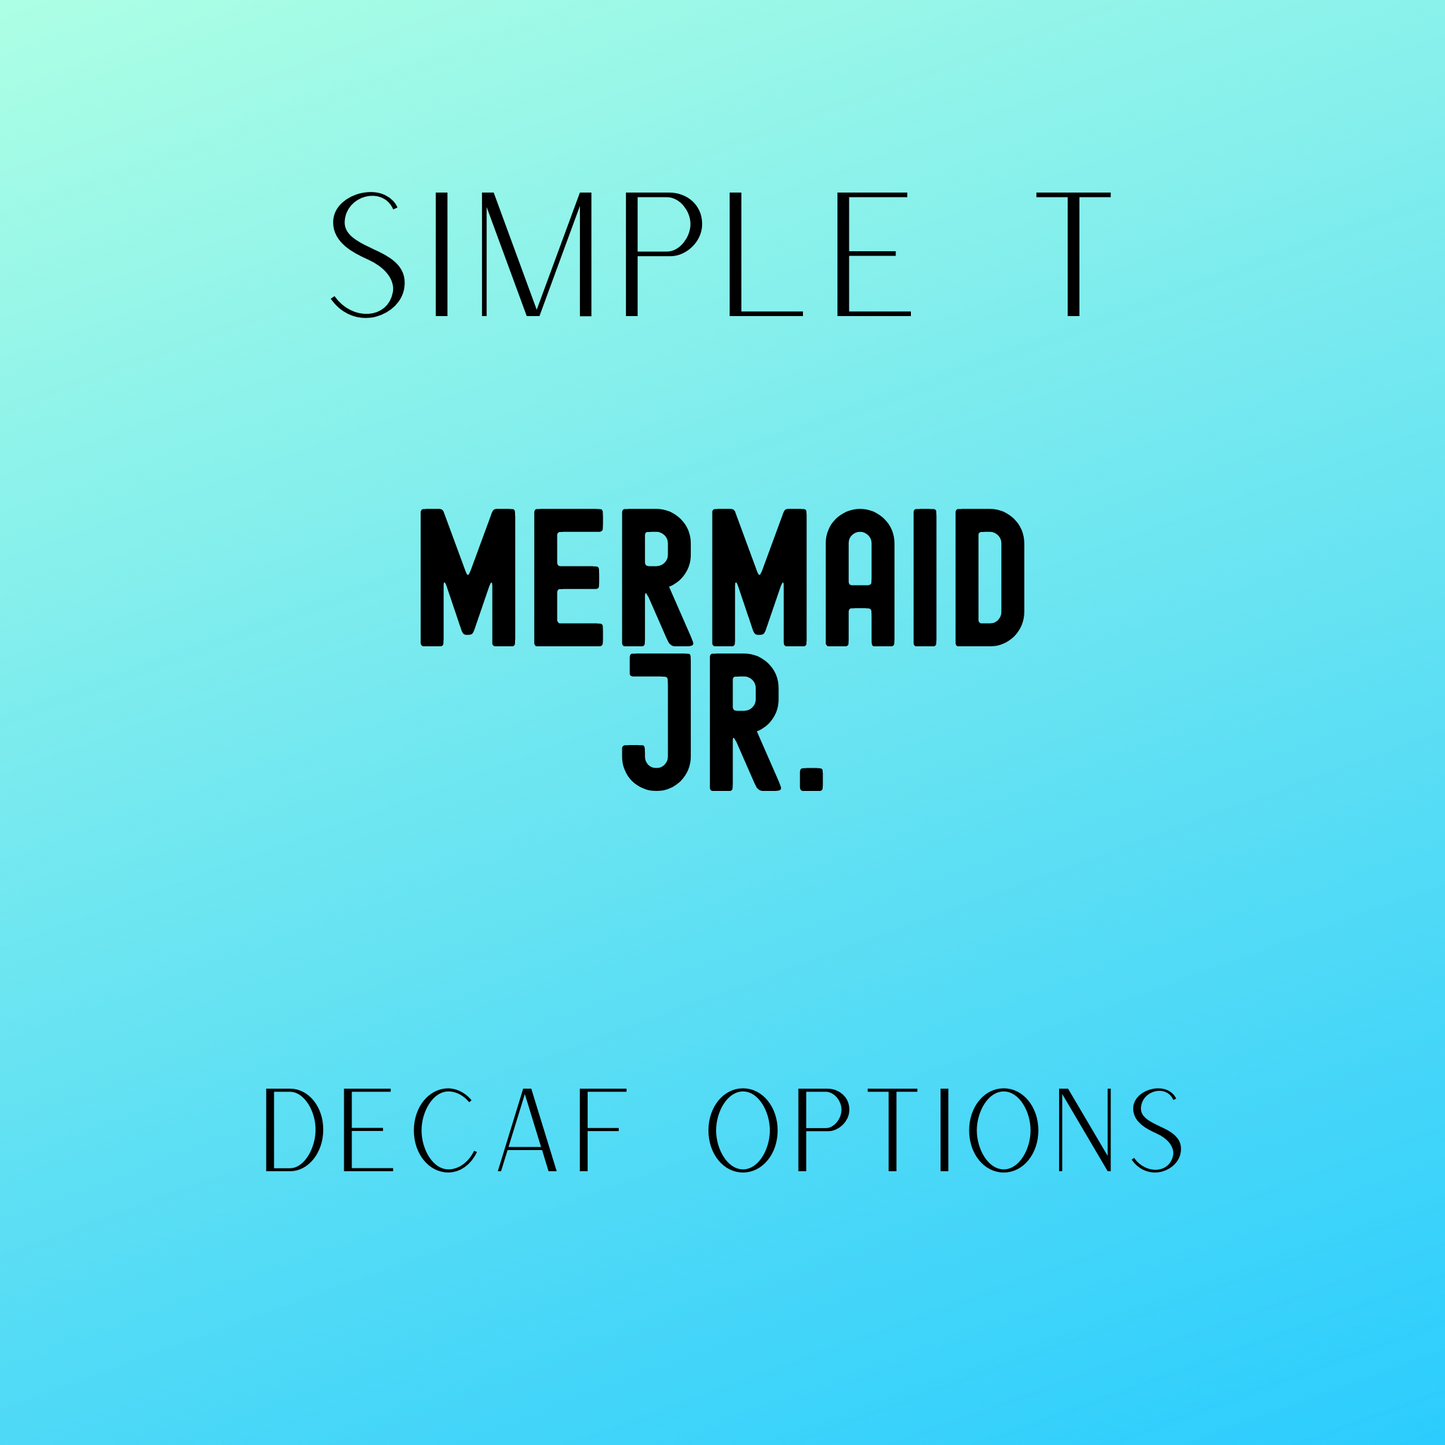 Mermaid Jr. Simply T Packets (Decaf)